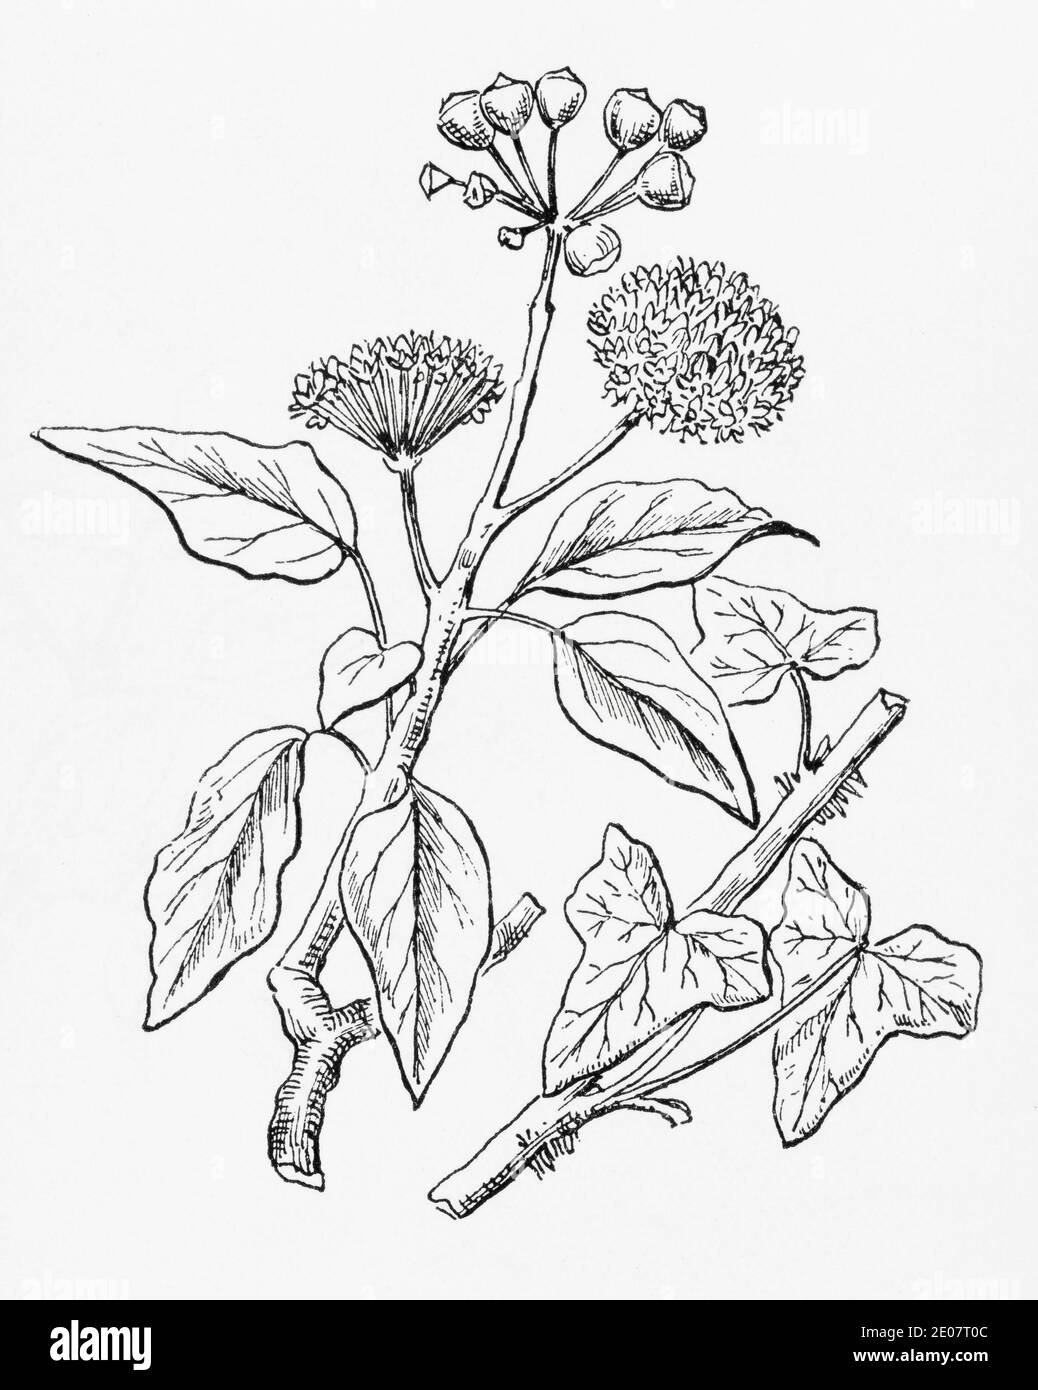 Antica illustrazione botanica incisione di Ivy / Hedera helix. Pianta di erbe medicinali tradizionali. Vedere Note Foto Stock